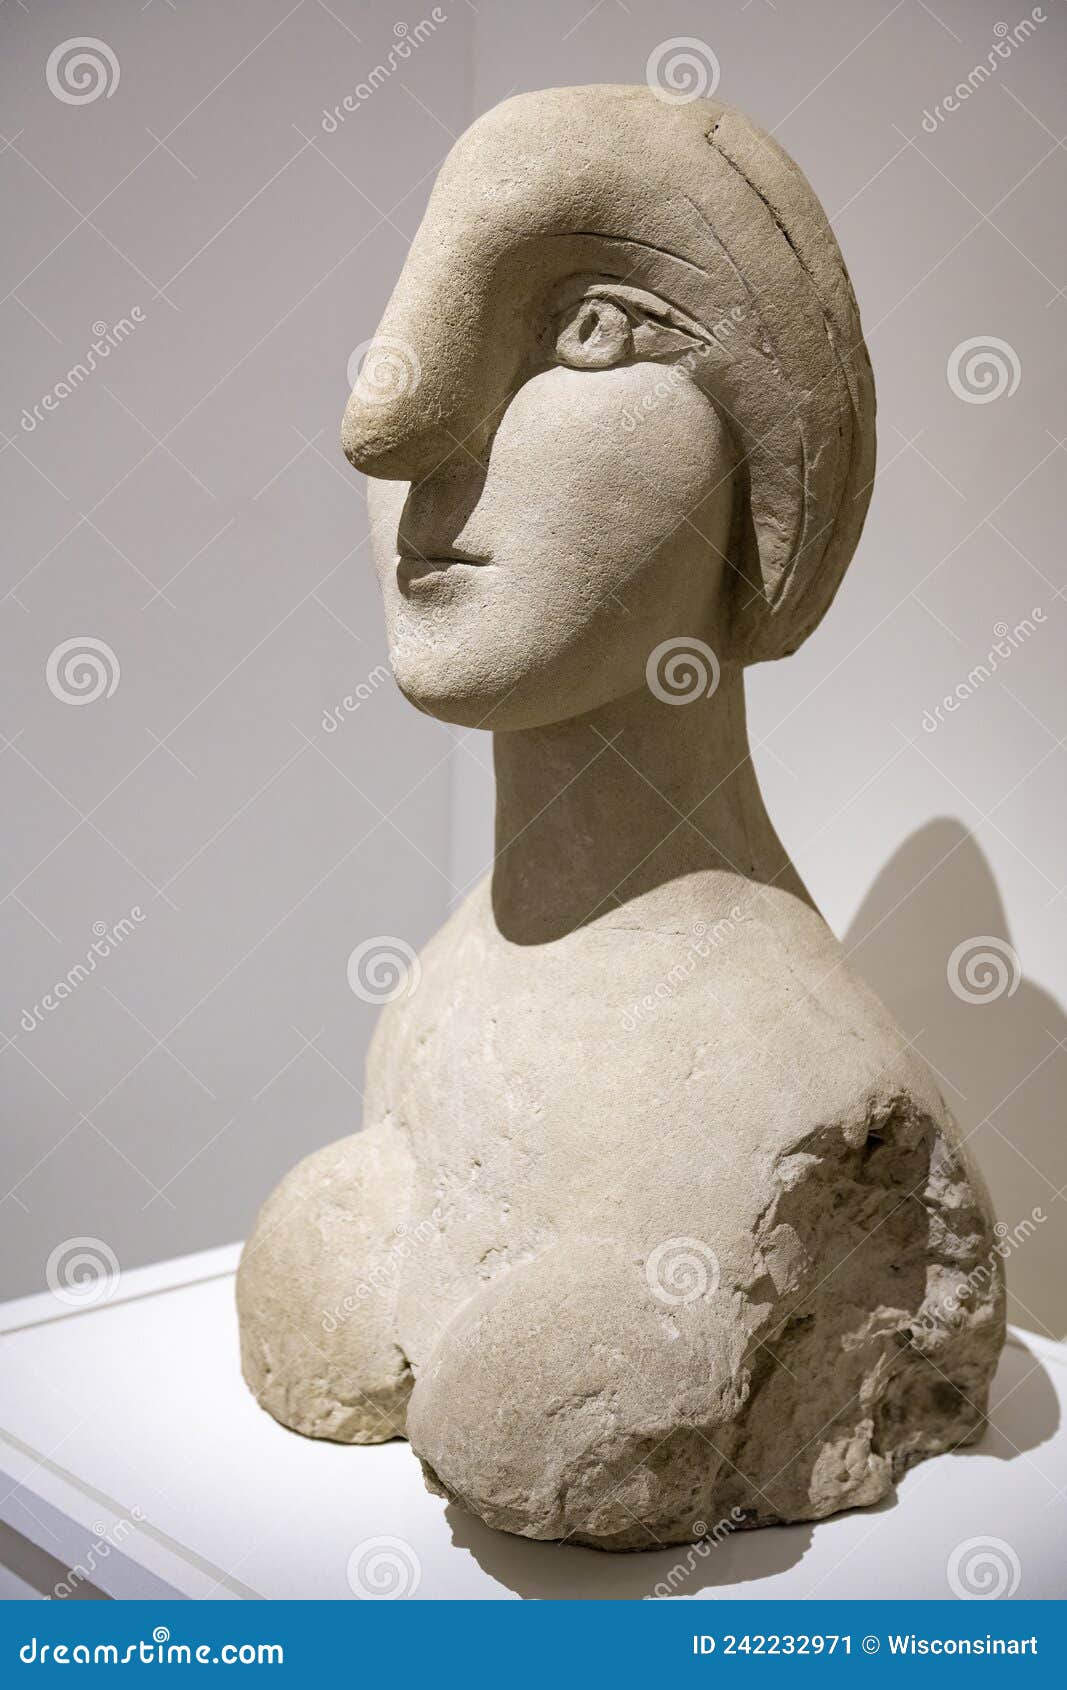 https://thumbs.dreamstime.com/z/pablo-picasso-statue-art-work-pablo-picasso-sculpture-titled-woman-head-work-art-pablo-picasso-museum-paris-242232971.jpg